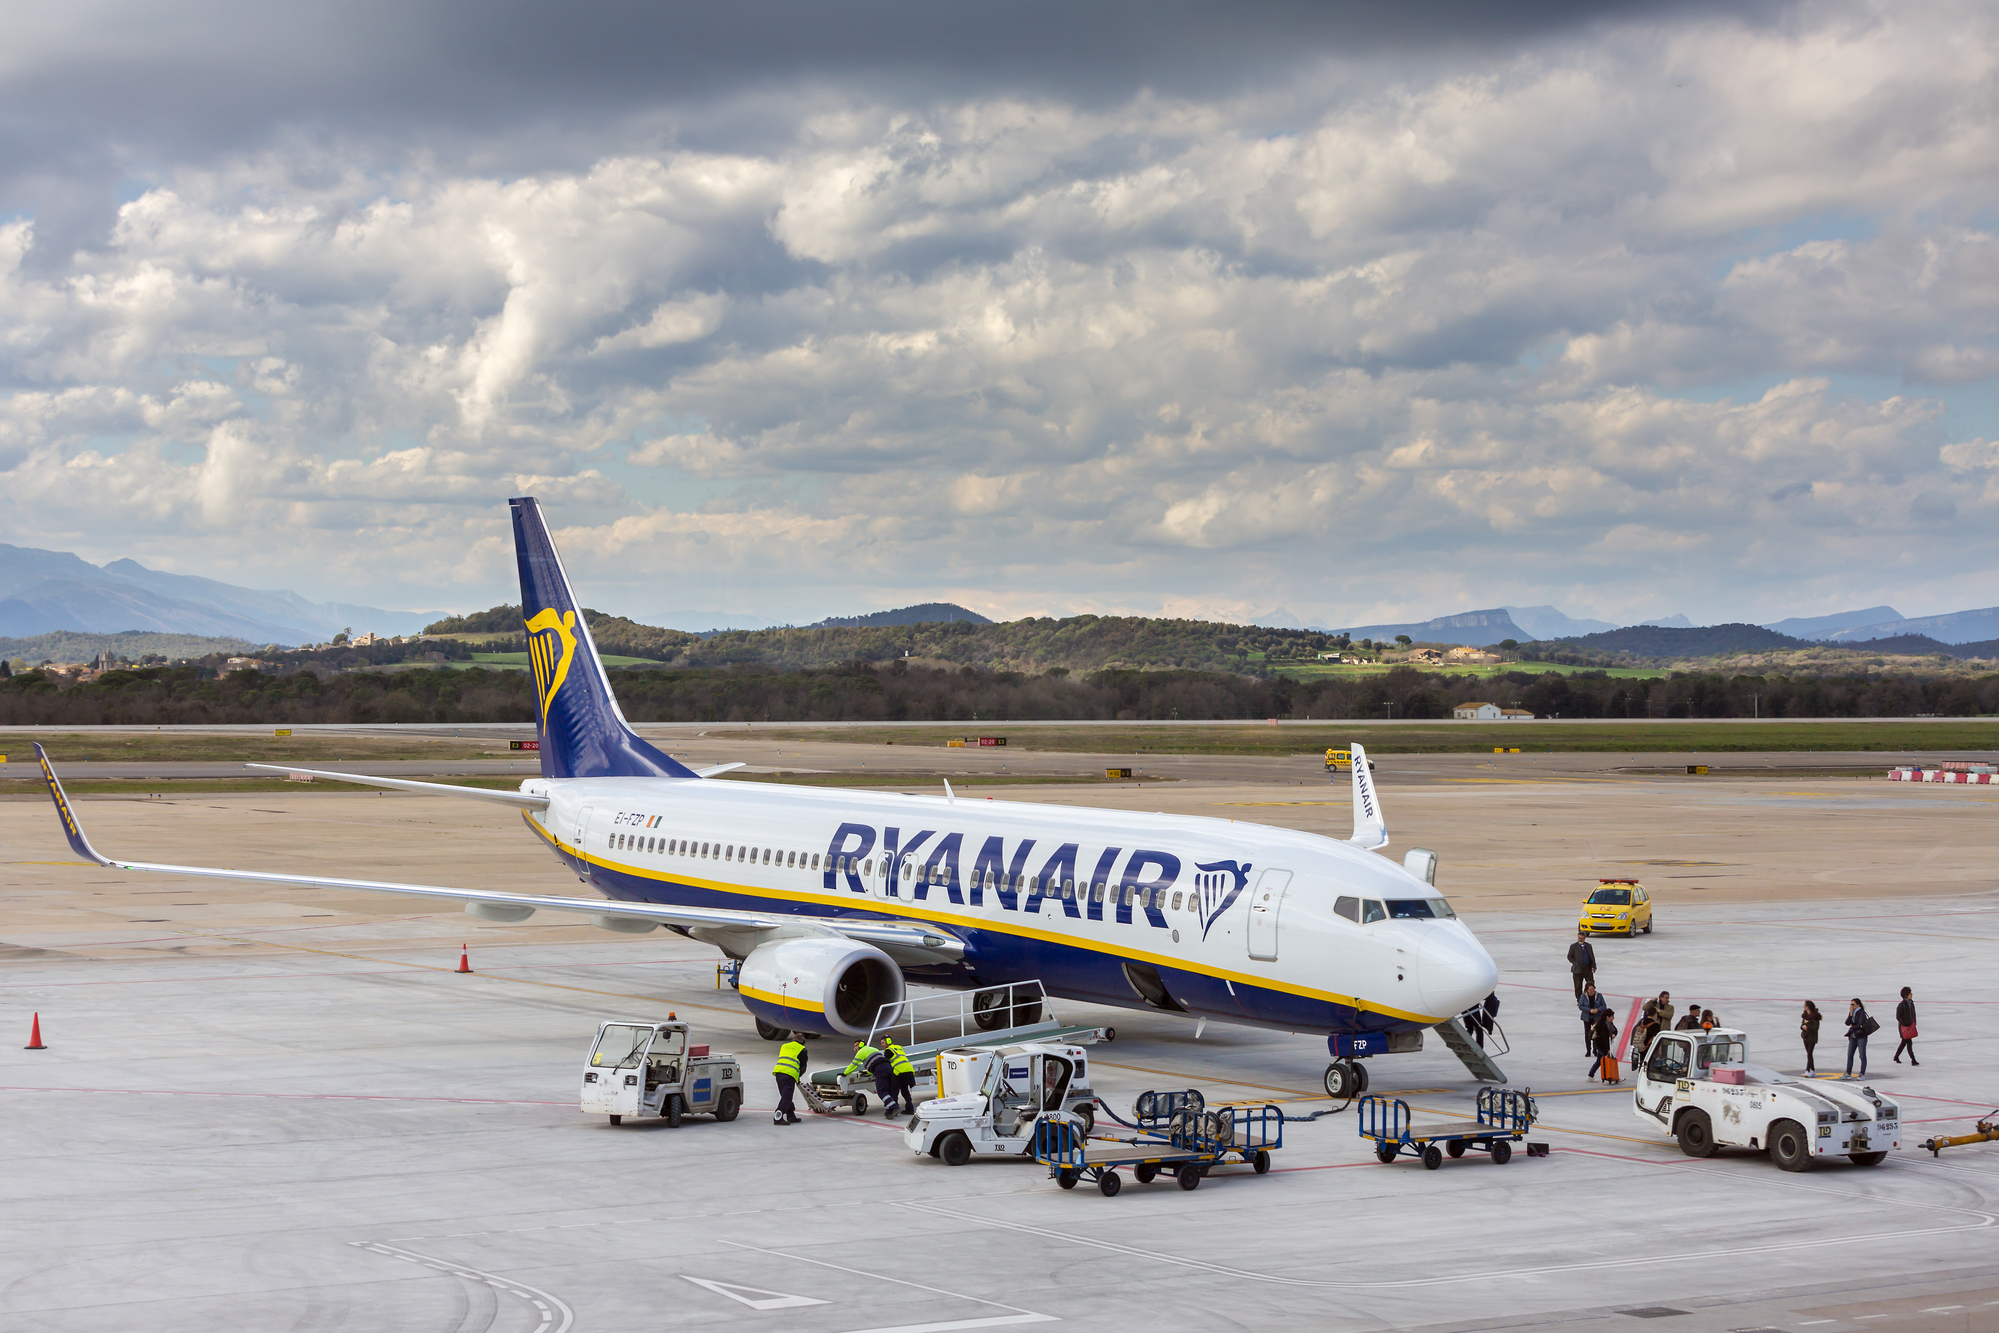 Ryanair y opérera 174 vols par semaine vers 44 destinations, dont 4 nouvelles lignes vers Marseille, Naples, Zadar et Zagreb. /crédit DepositPhoto